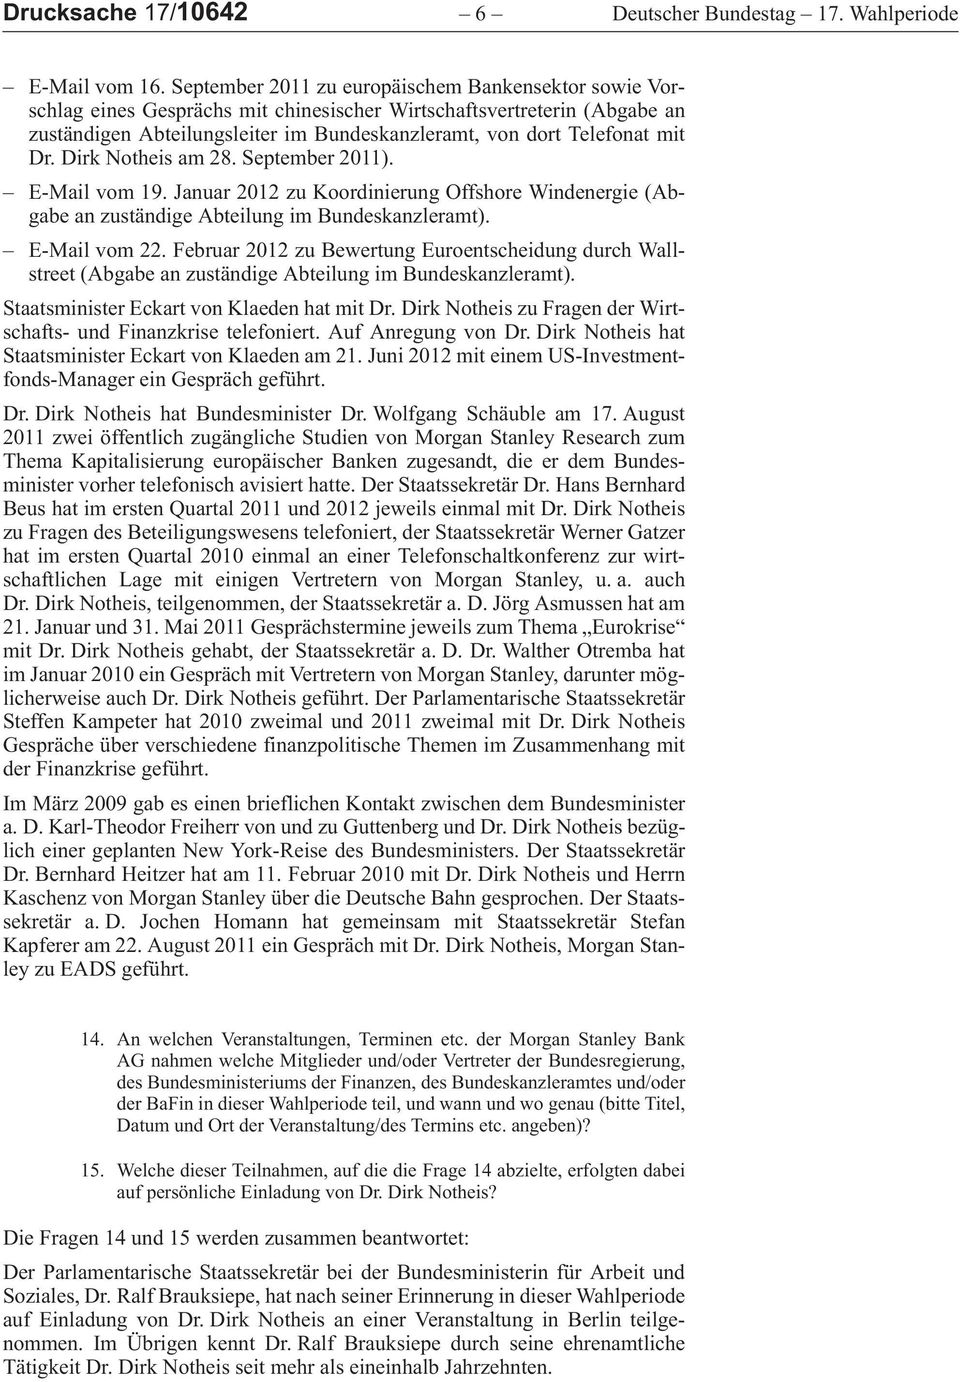 Dirk Notheis am 28. September 2011). E-Mailvom19.Januar2012zuKoordinierungOffshoreWindenergie (Abgabe an zuständige Abteilung im Bundeskanzleramt). E-Mailvom22.